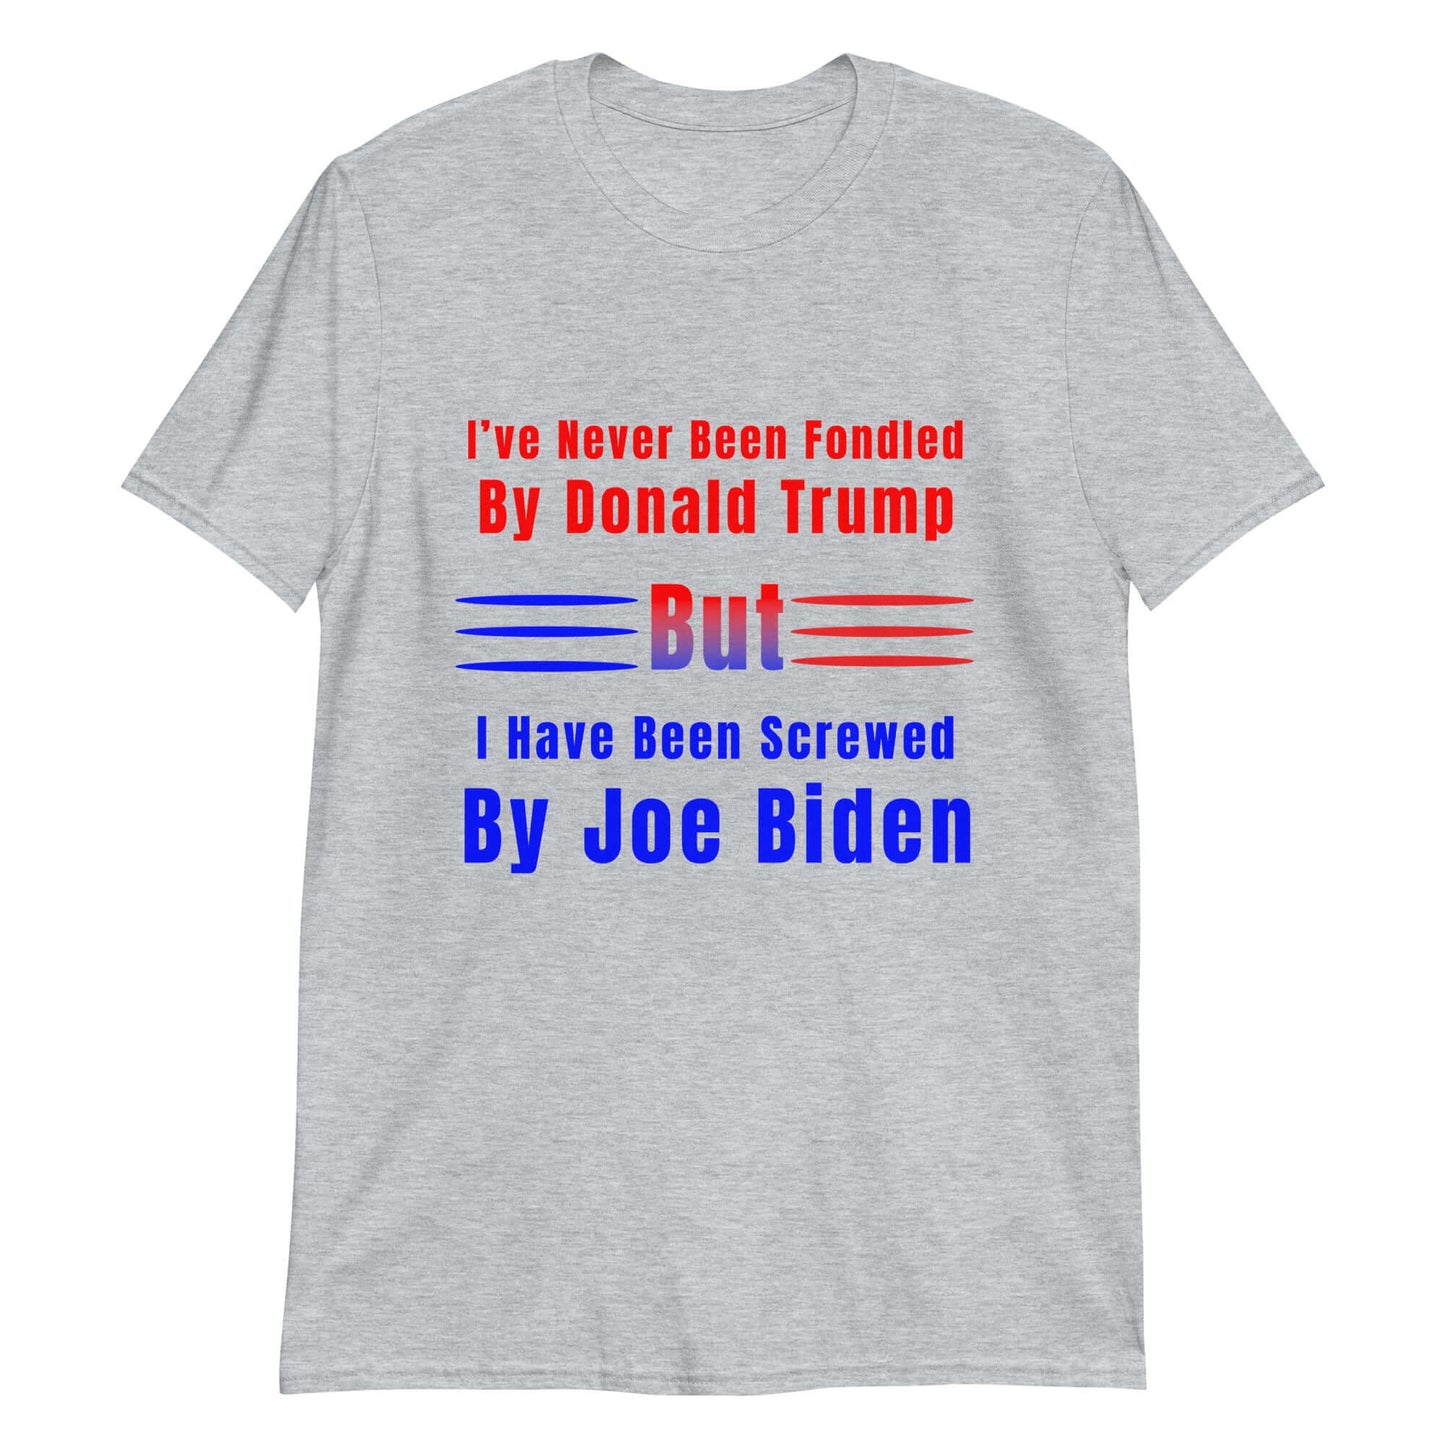 Screwed by Joe Biden - Short-Sleeve Unisex T-Shirt